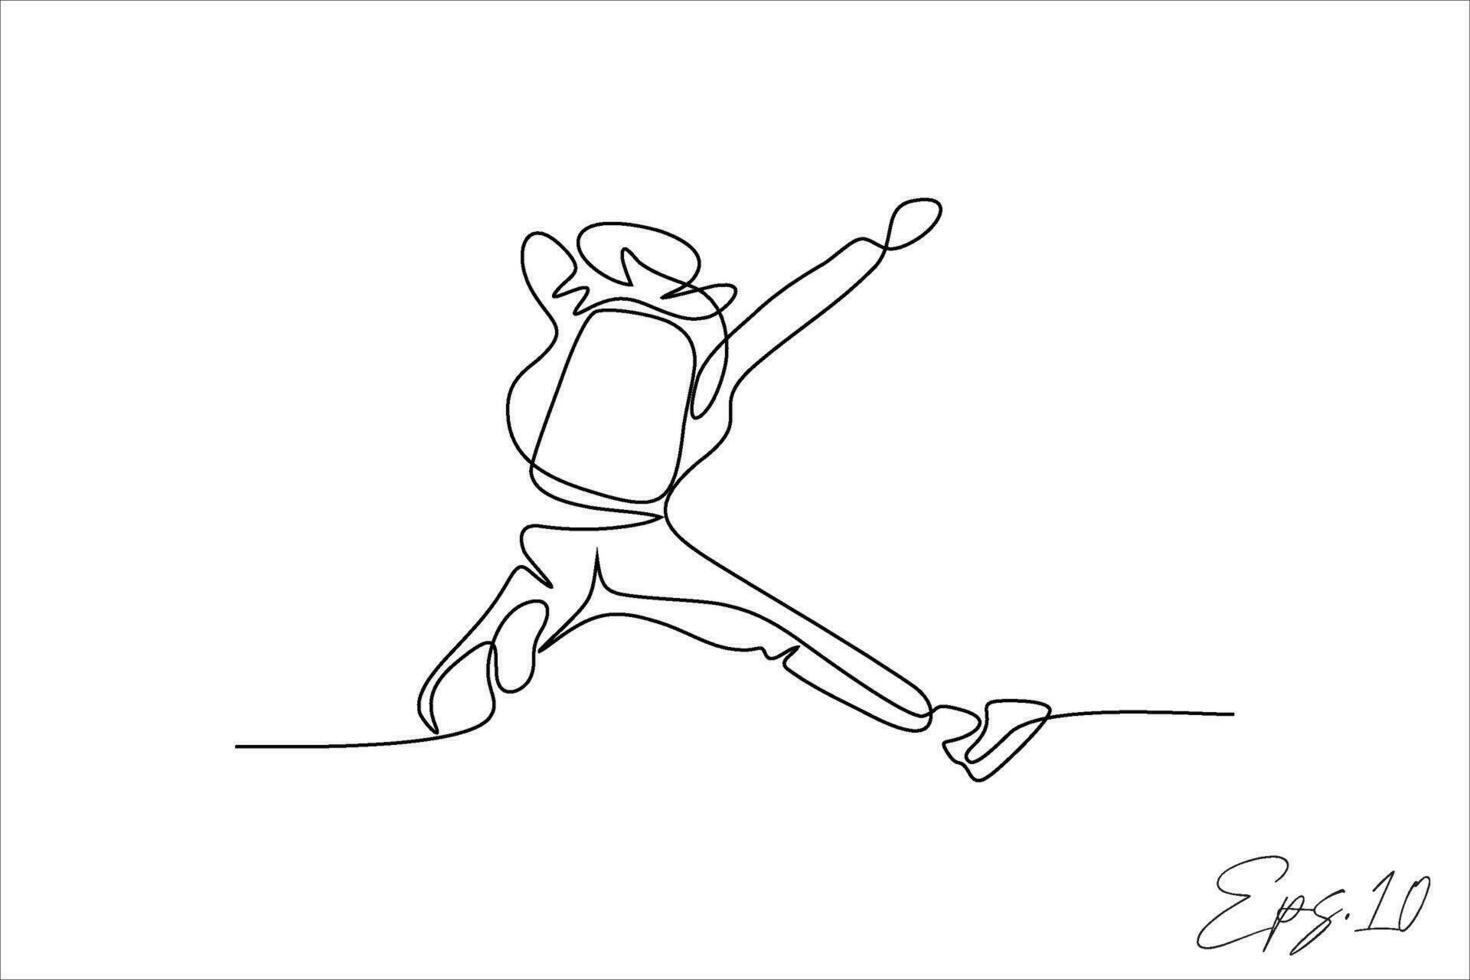 doorlopend lijn vector illustratie van persoon jumping parachute